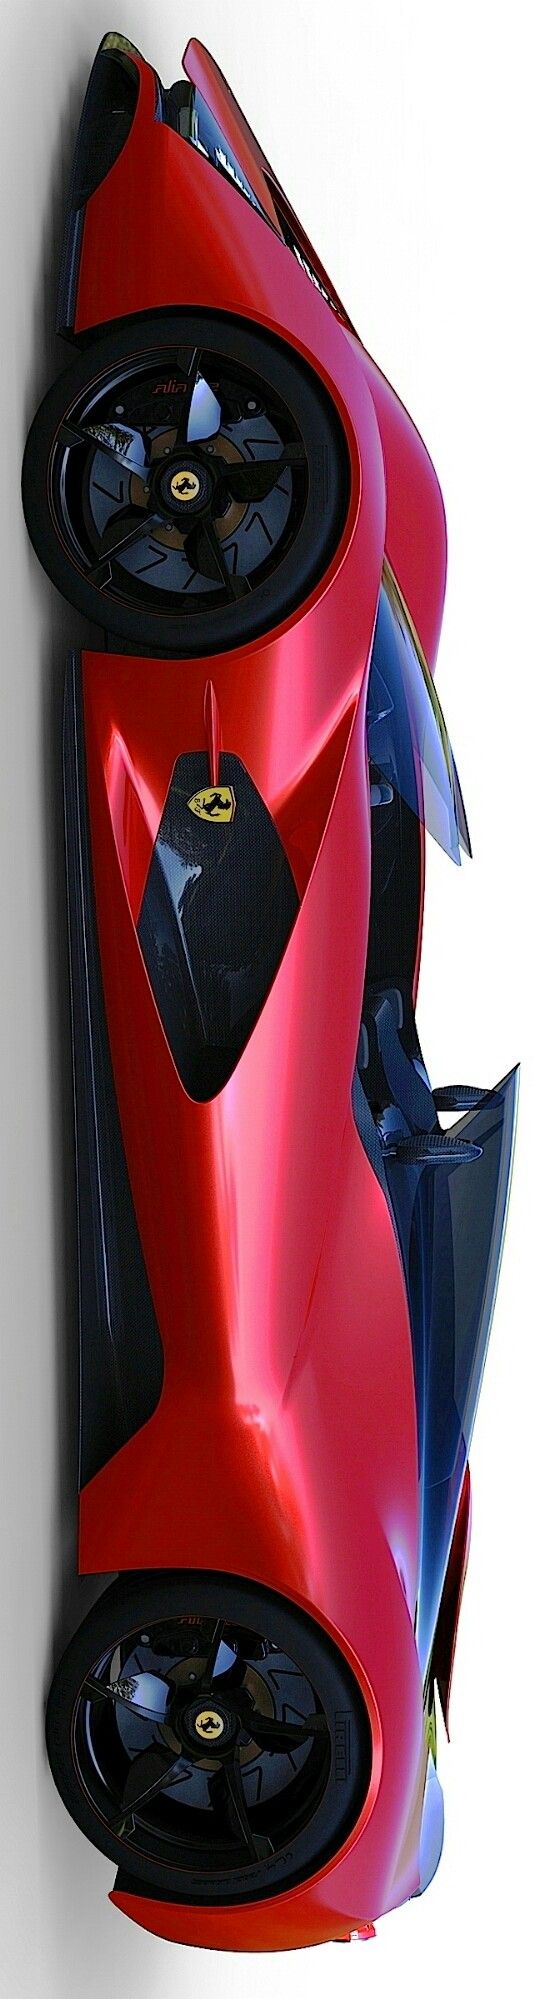 Ferrari Aliante Concept by Levon